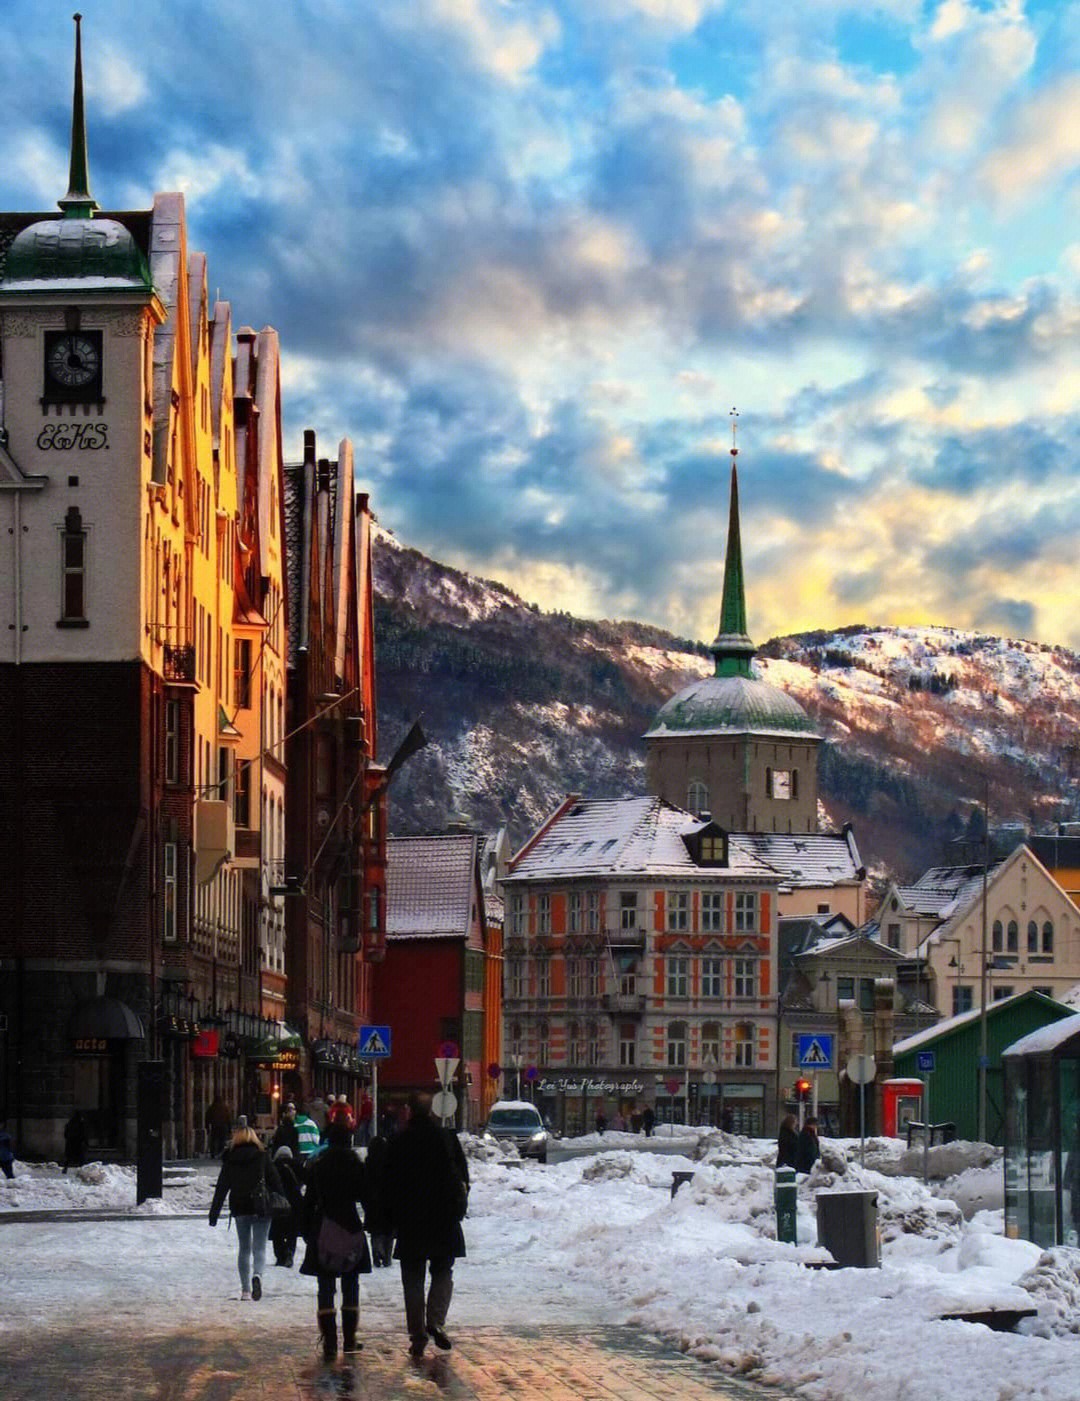 卑尔根,挪威第二大城市,人口还不如北京一个区多,大街上看不到几个人